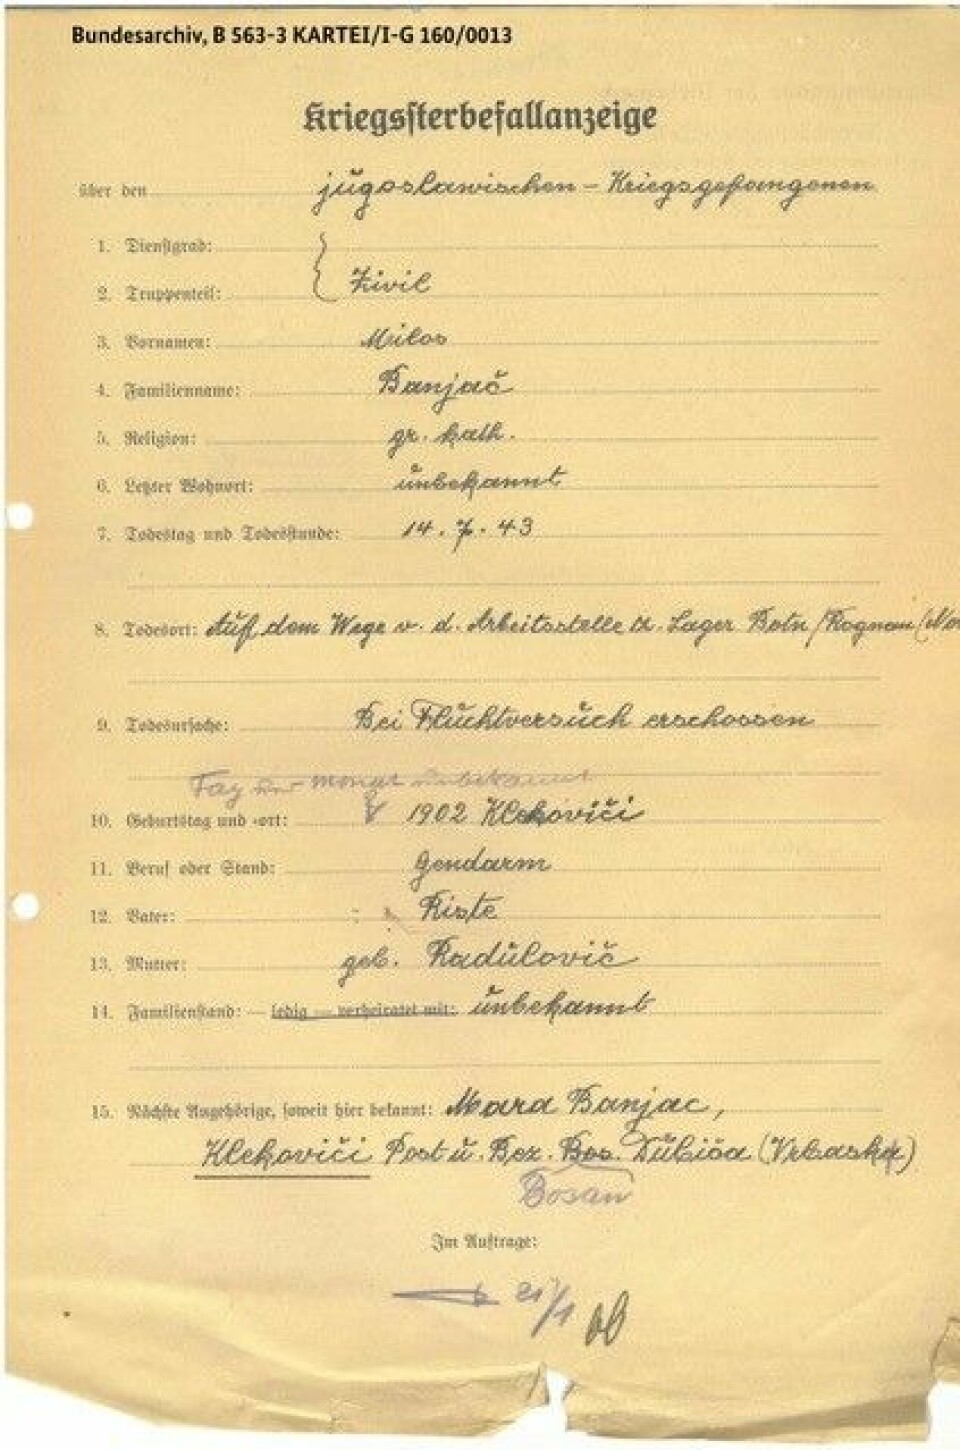 Tyskerne var nøye med å registrere alle fangene i et arkiv. Her er Milos Banjac registrert med dødsdato 14.7.1943. Han er skutt i et fluktforsøk, står det.